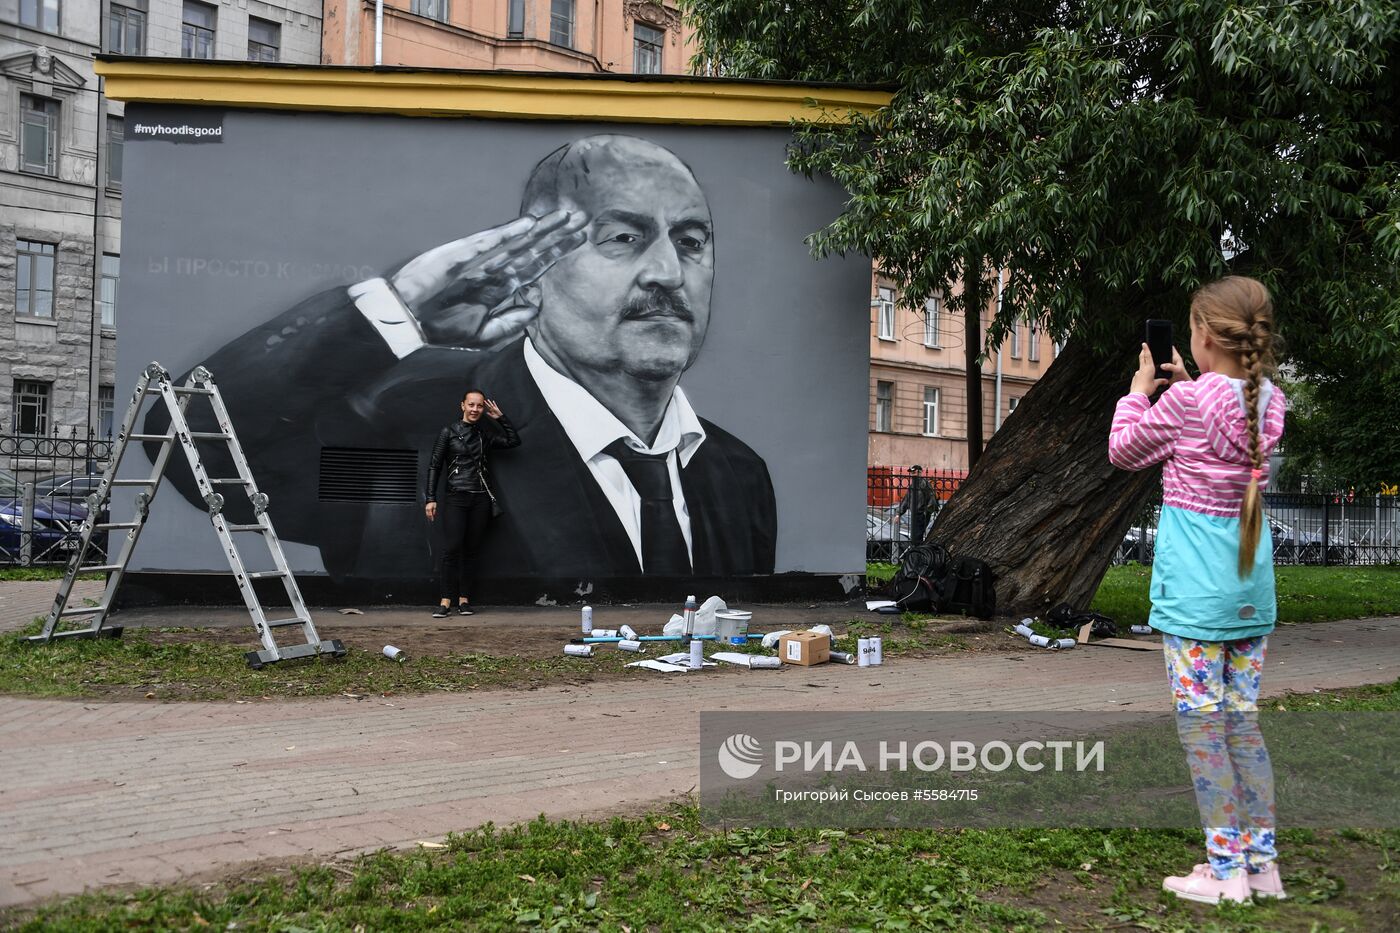 В Санкт-Петербурге перерисовали граффити с С. Черчесовым